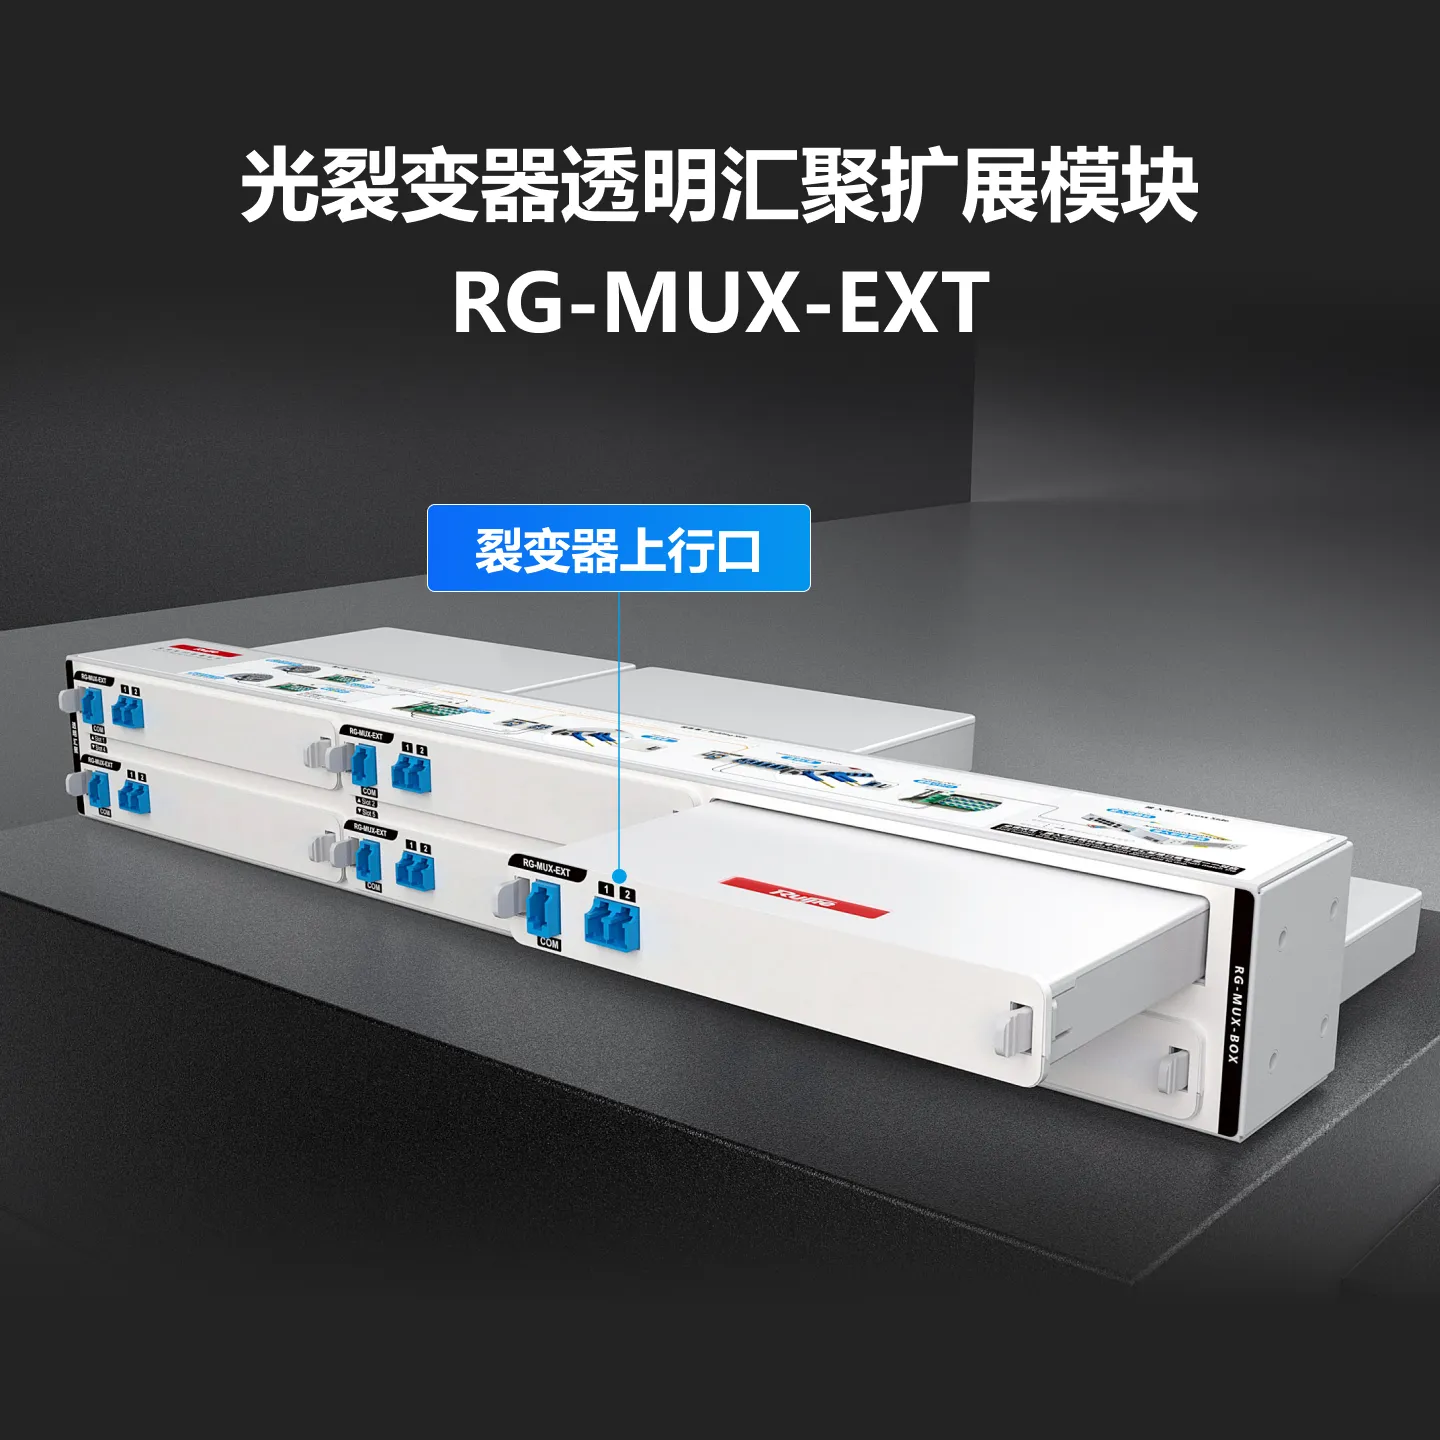 RG-MUX-EXT